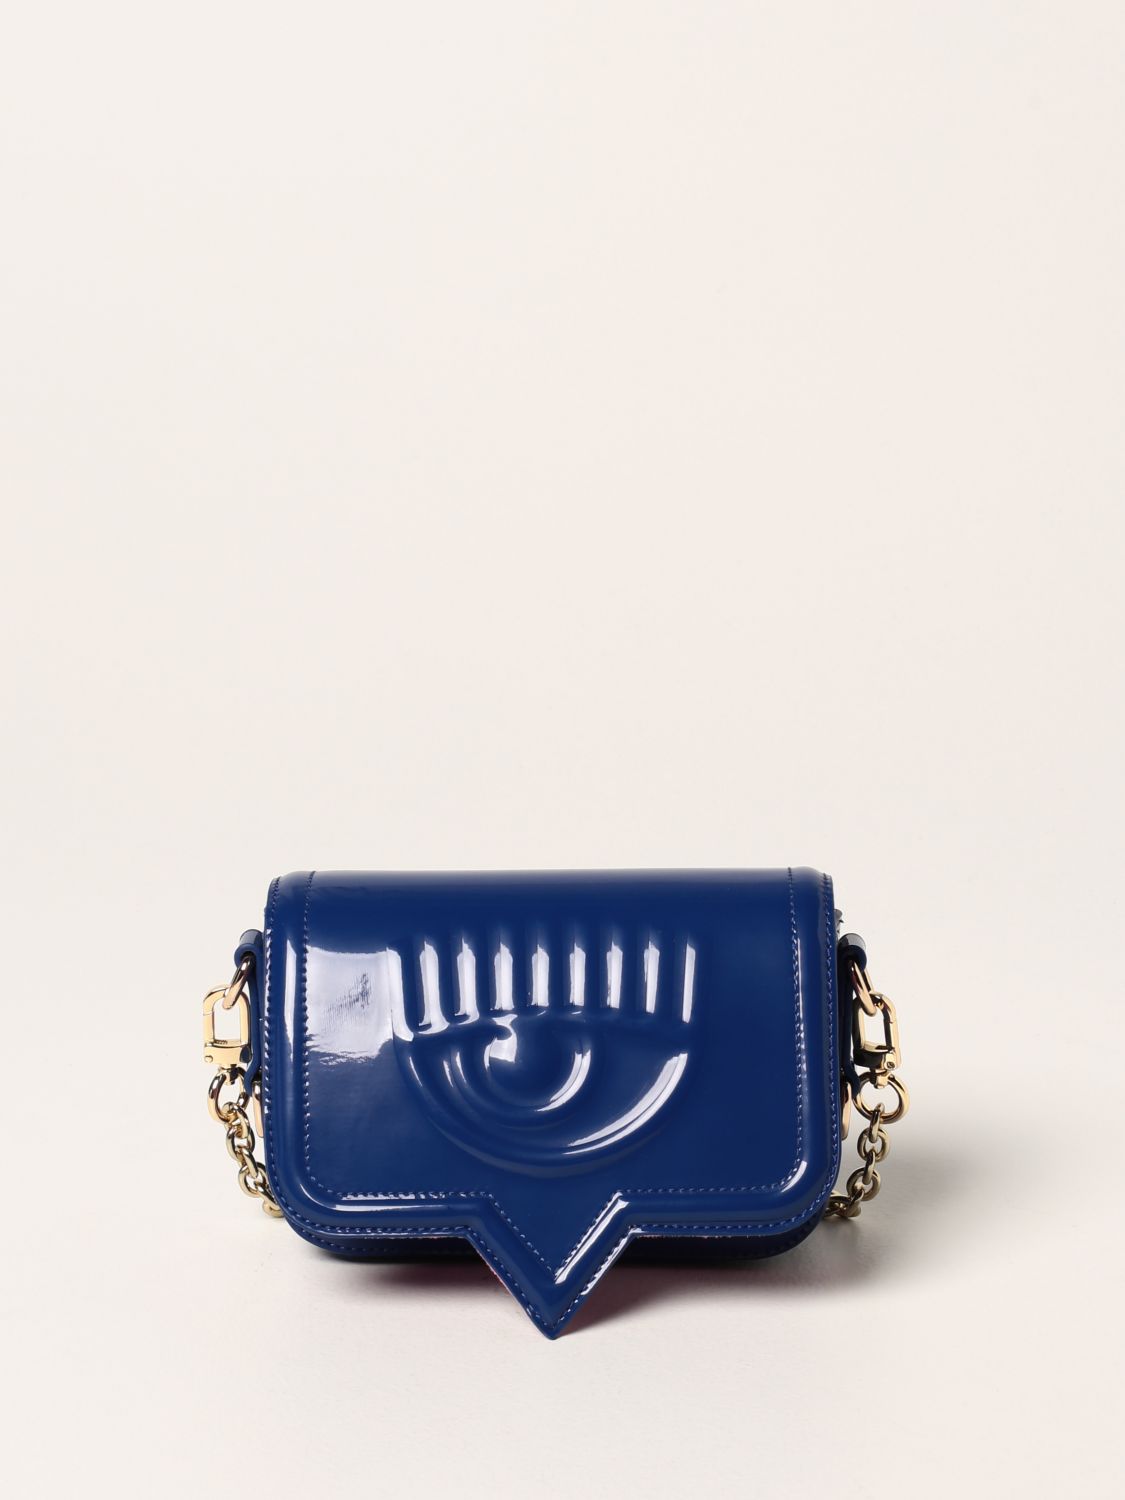 Leather wallet Chiara Ferragni Blue in Leather - 34220485